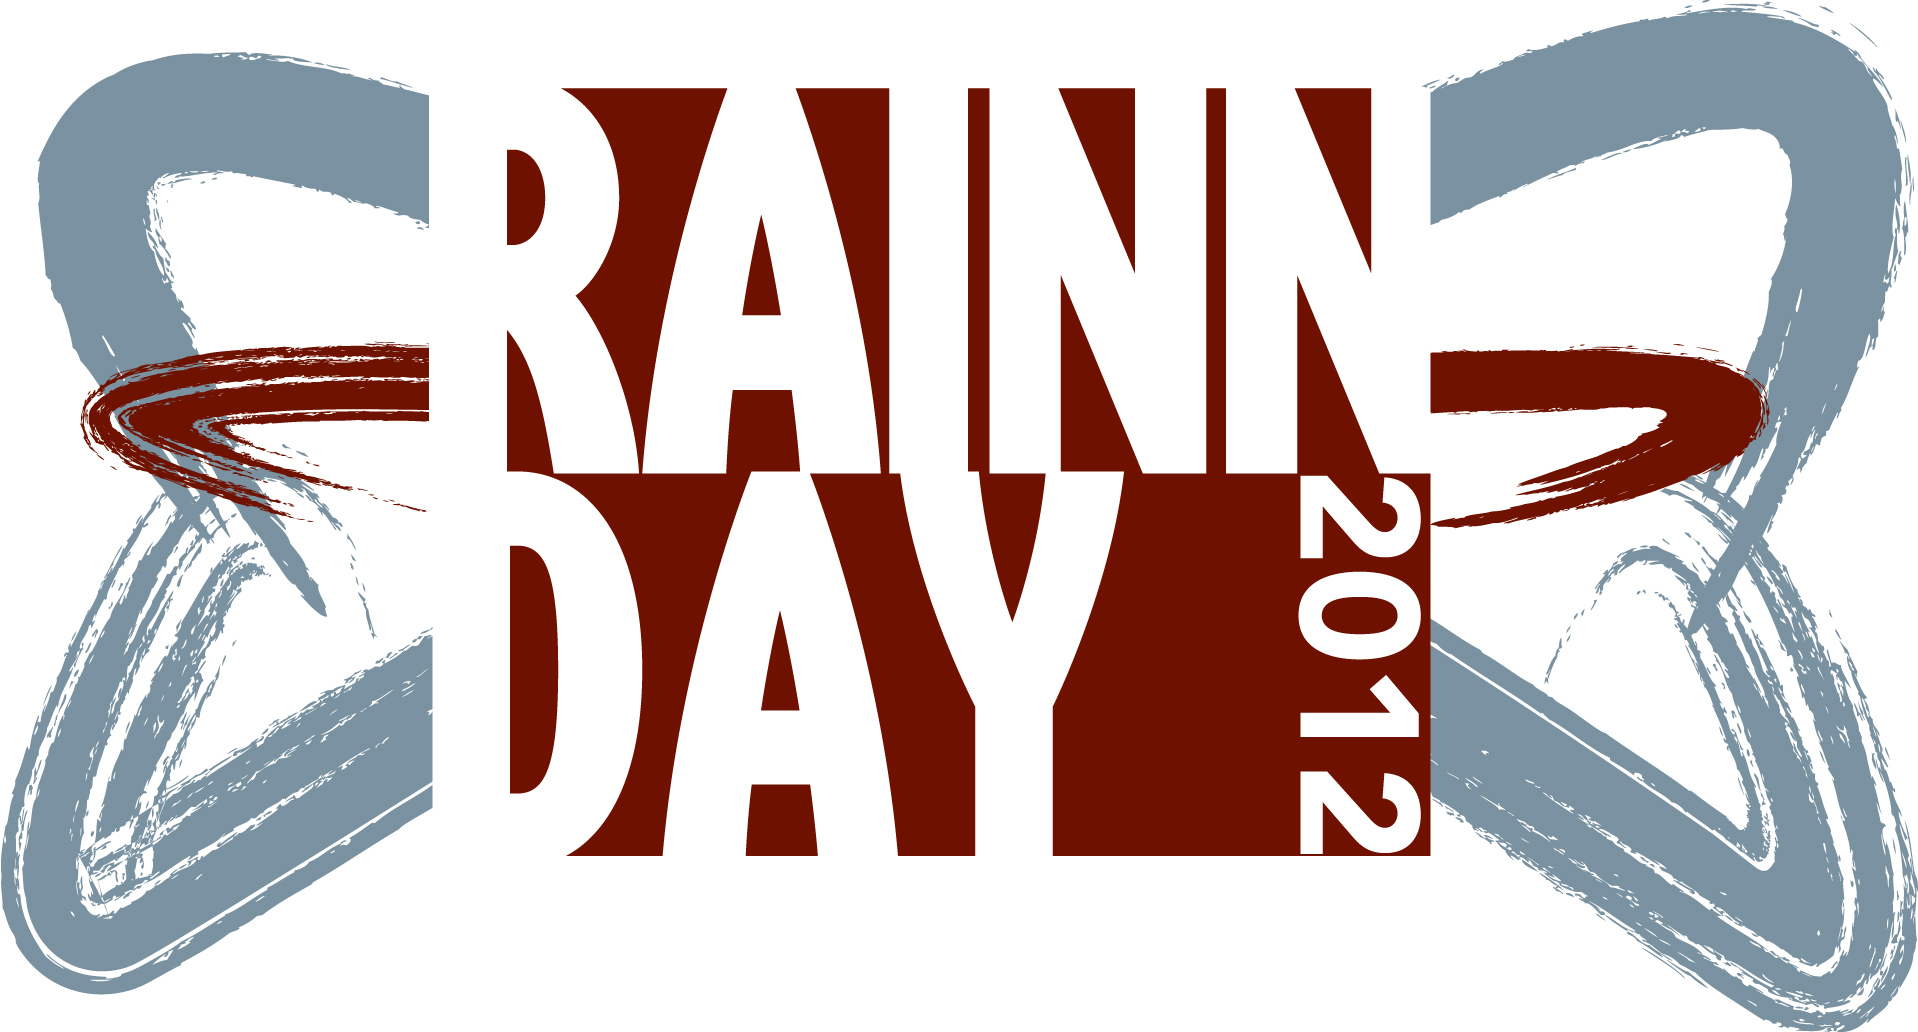 rainn day logo